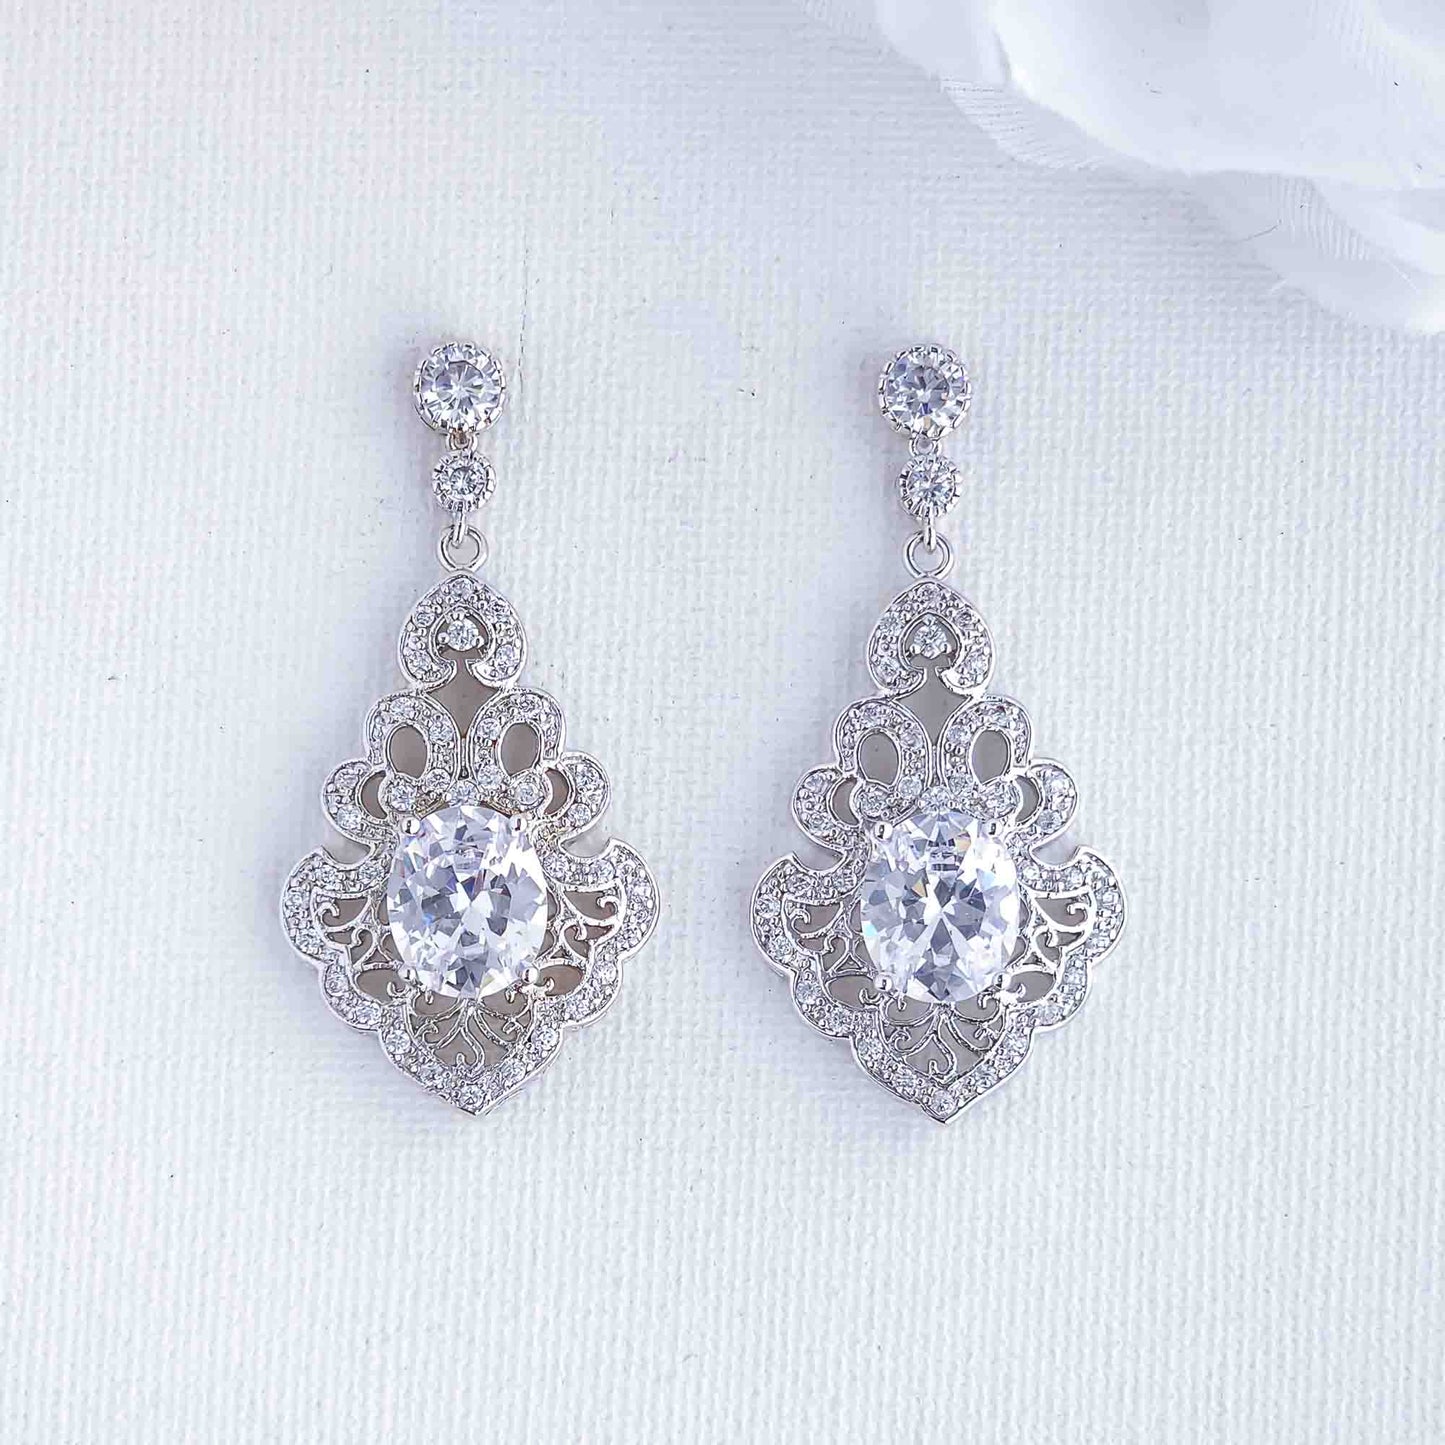 Vintage Wedding Earrings for Bride-Eloise